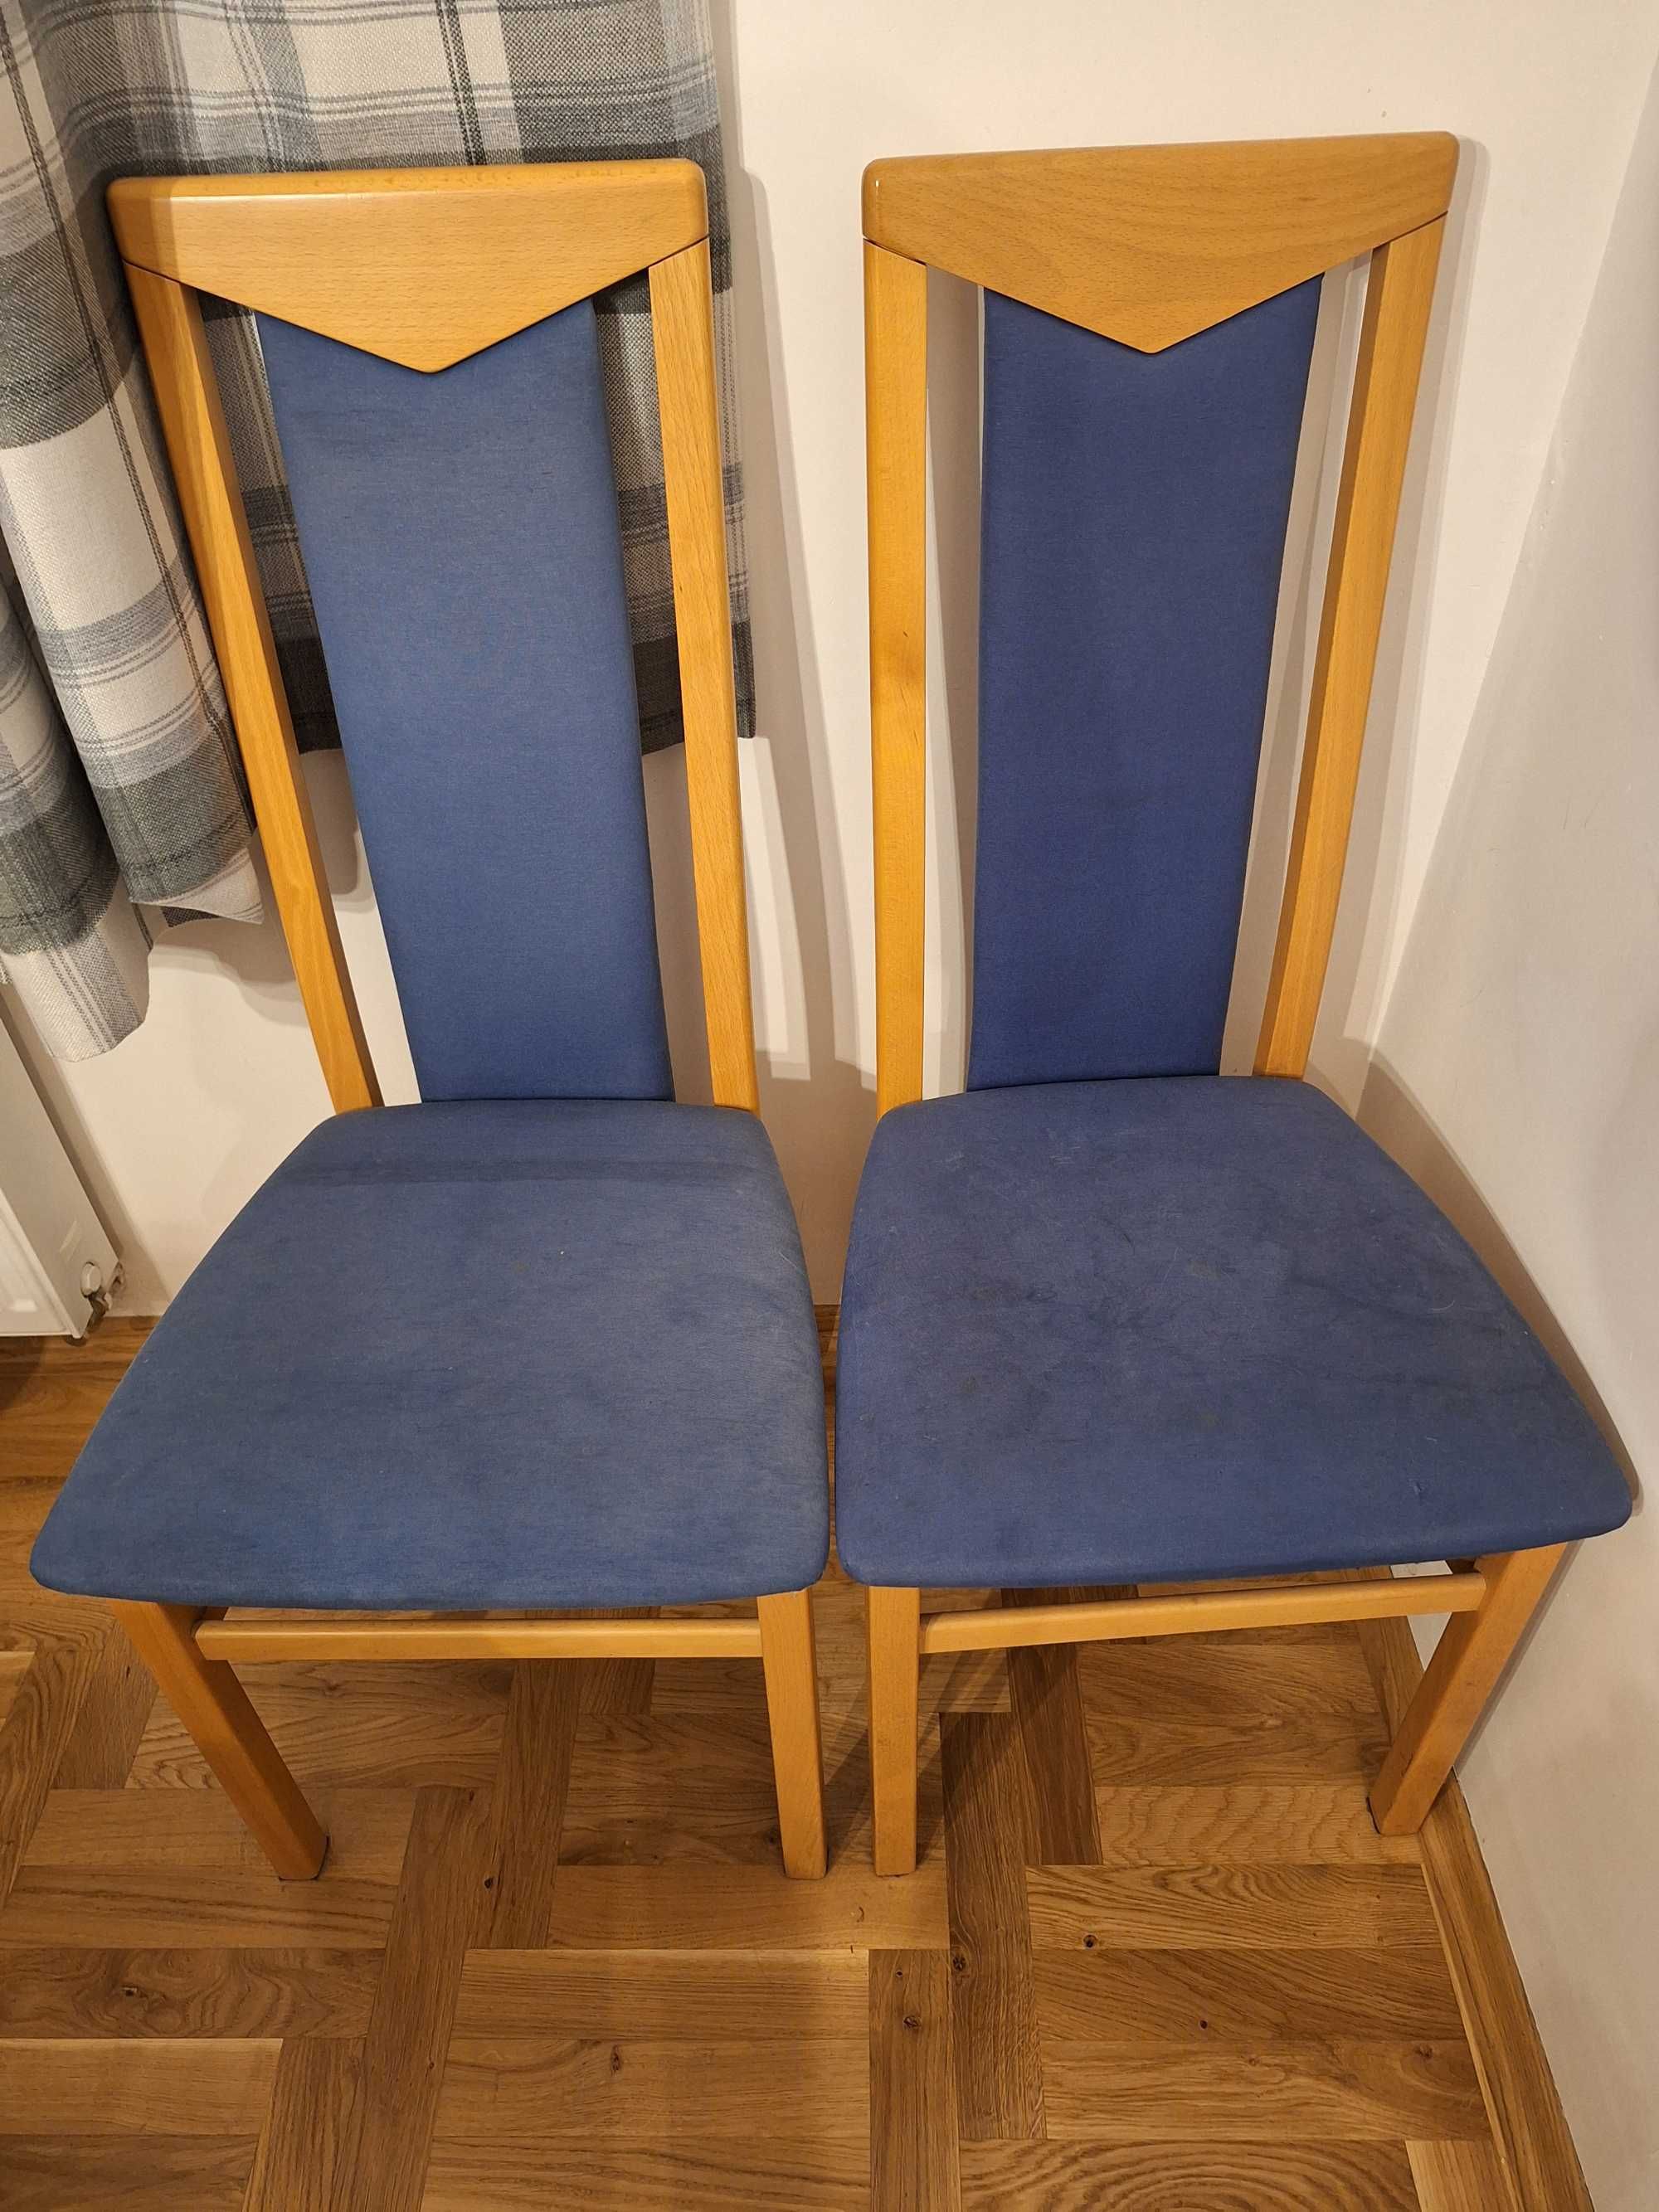 Krzesła 2 szt., kolor niebieski - tylko odbiór osobisty